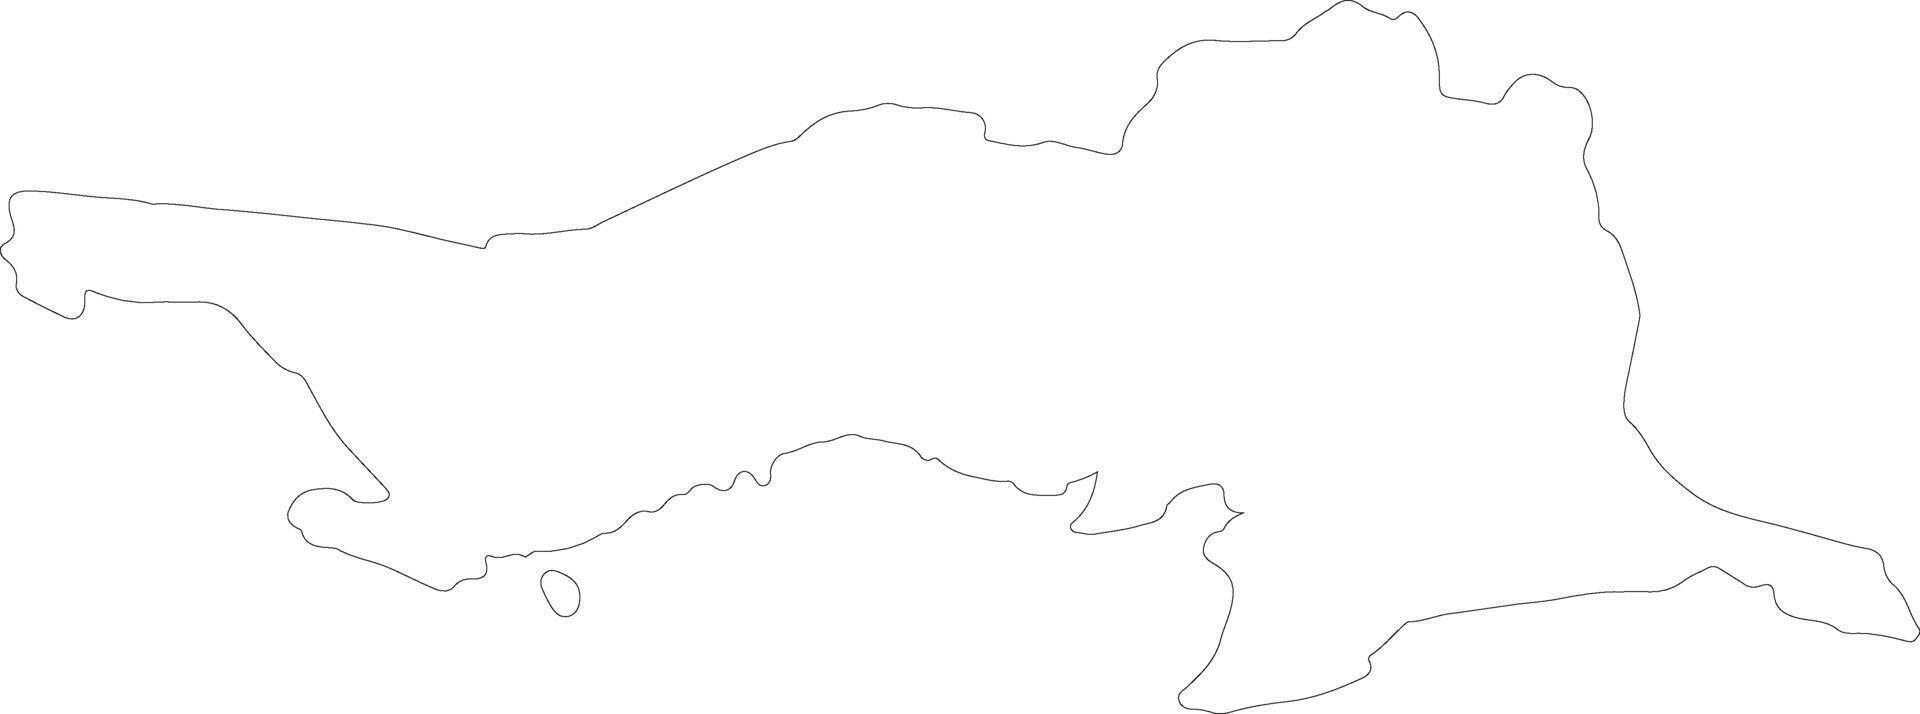 atirau Kazajstán contorno mapa vector